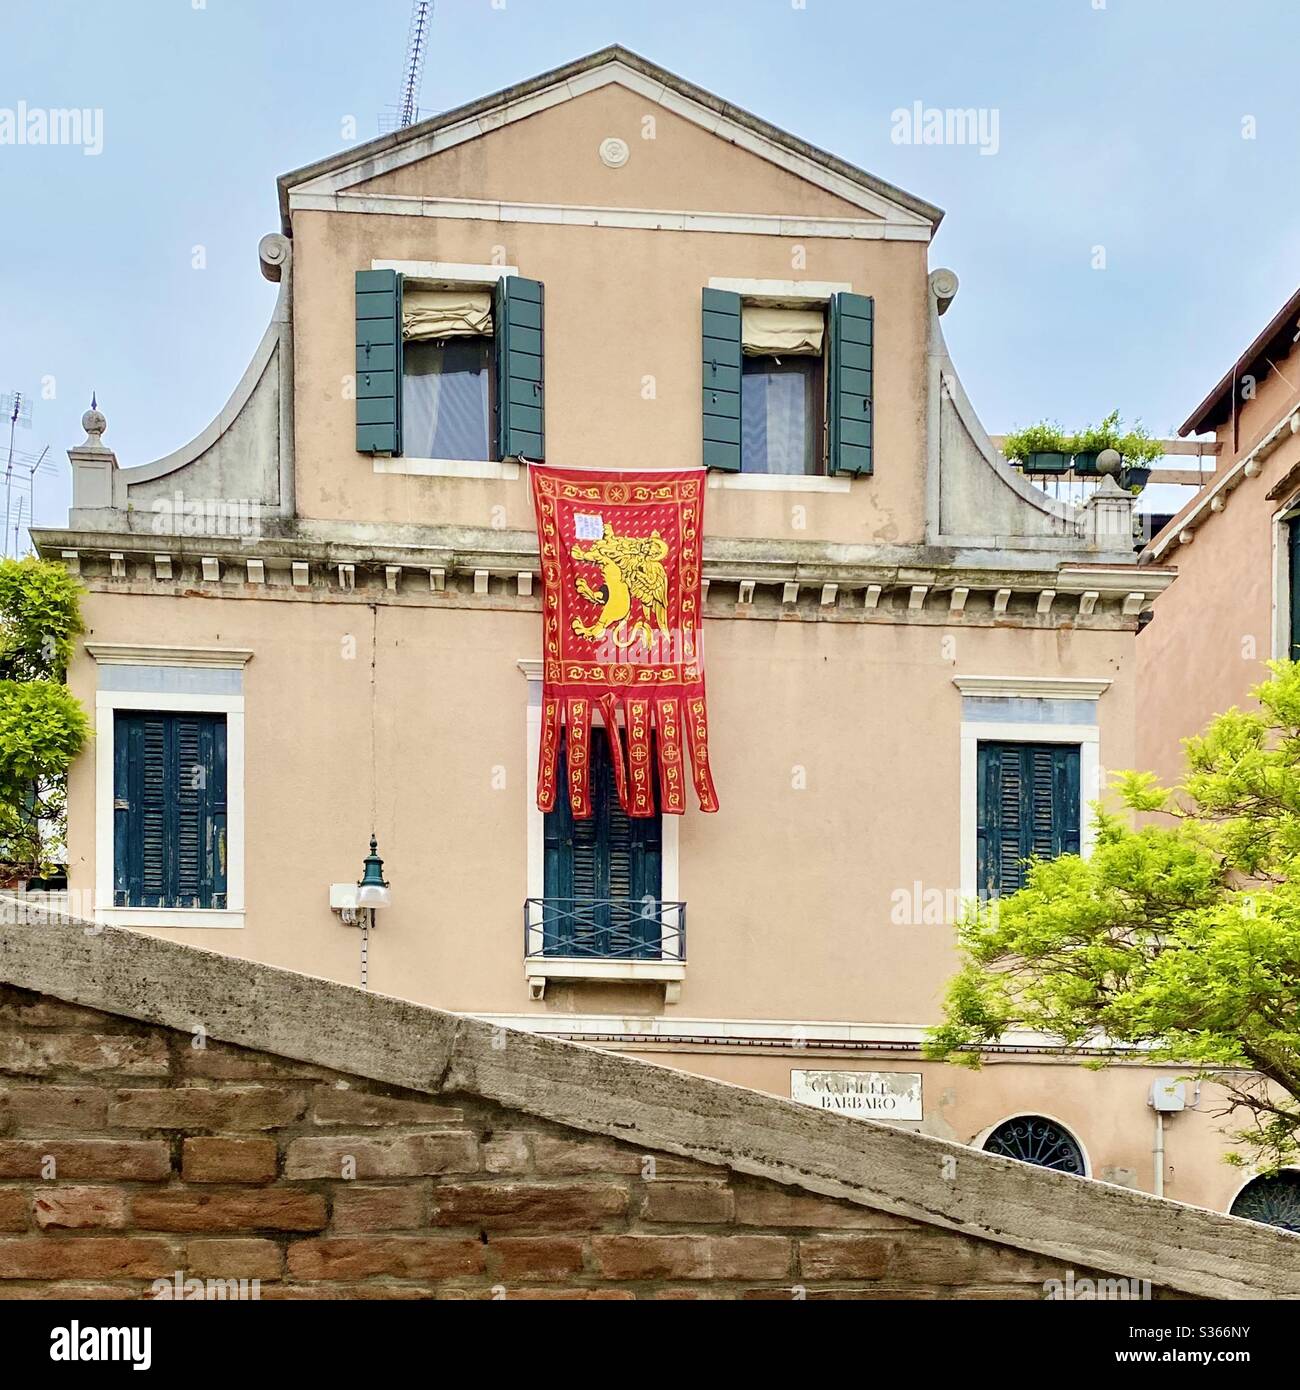 Bandera veneciana o gonfalone en exhibición durante el covid-19 Foto de stock